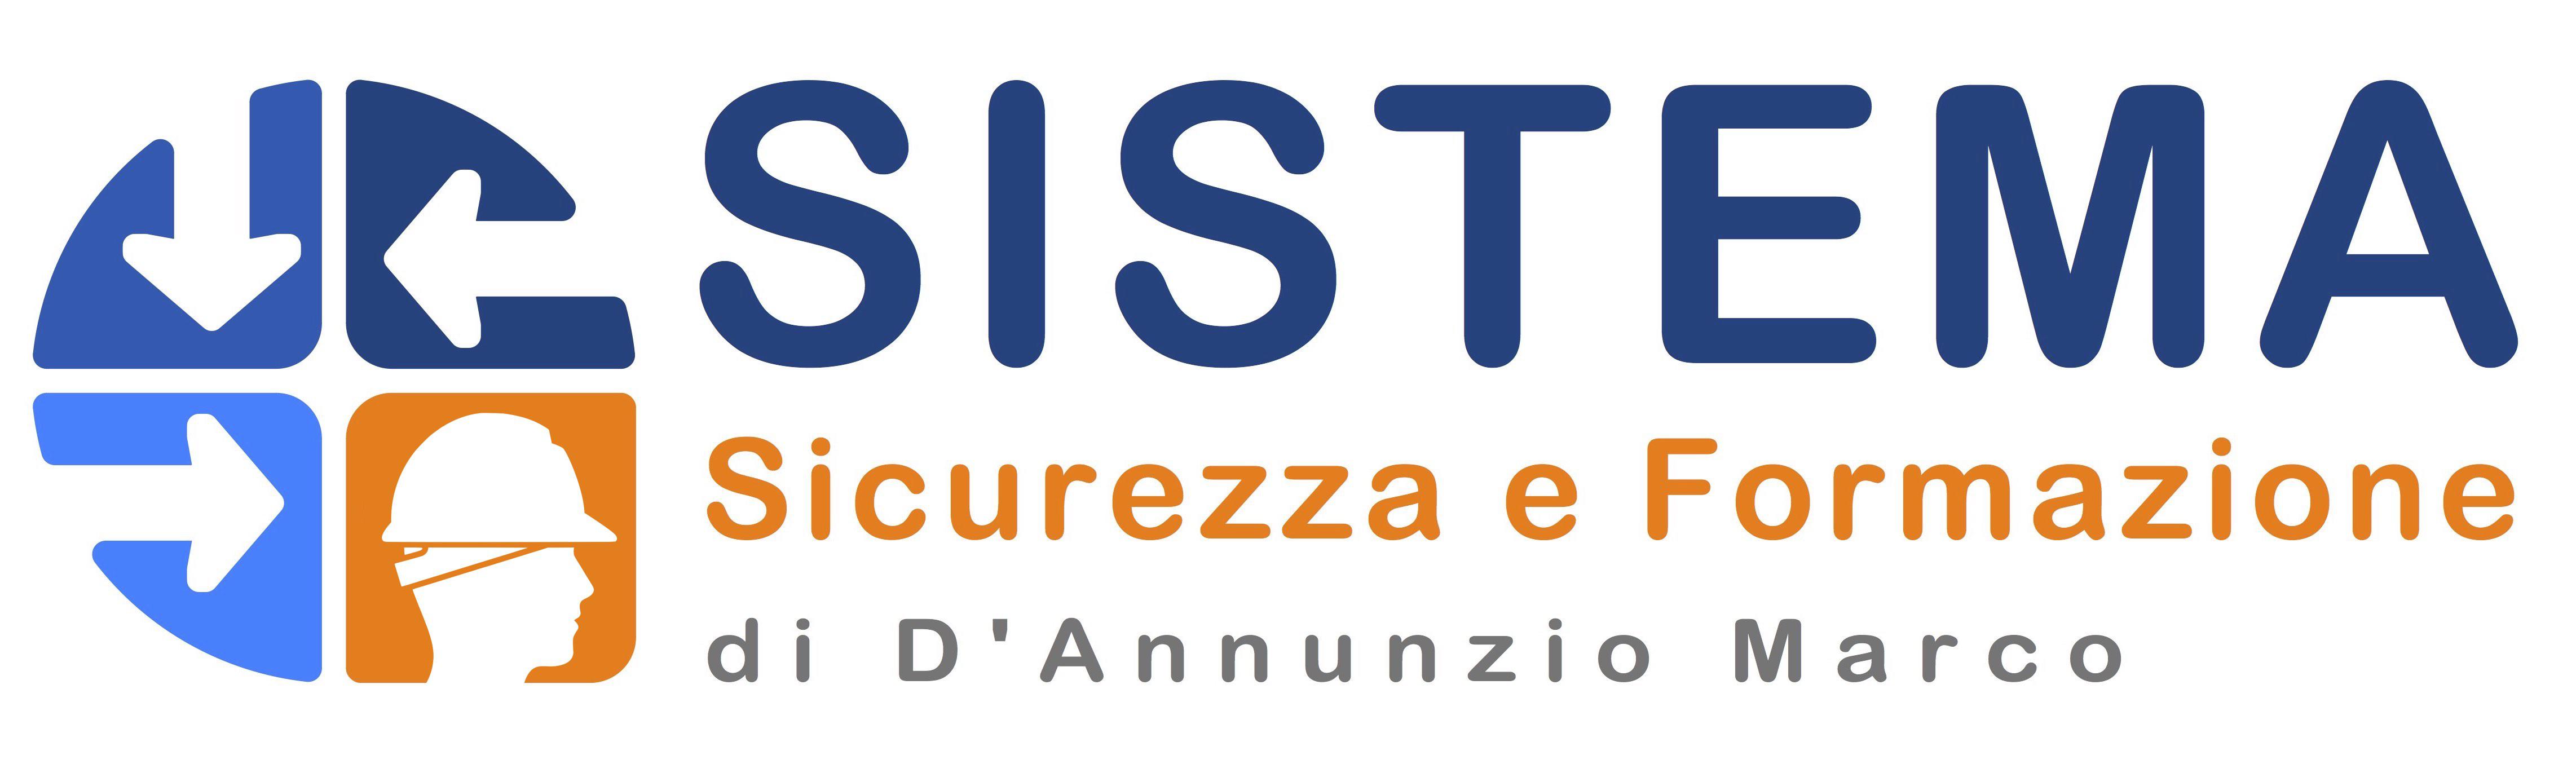 SISTEMA SICUREZZA E FORMAZIONE Logo